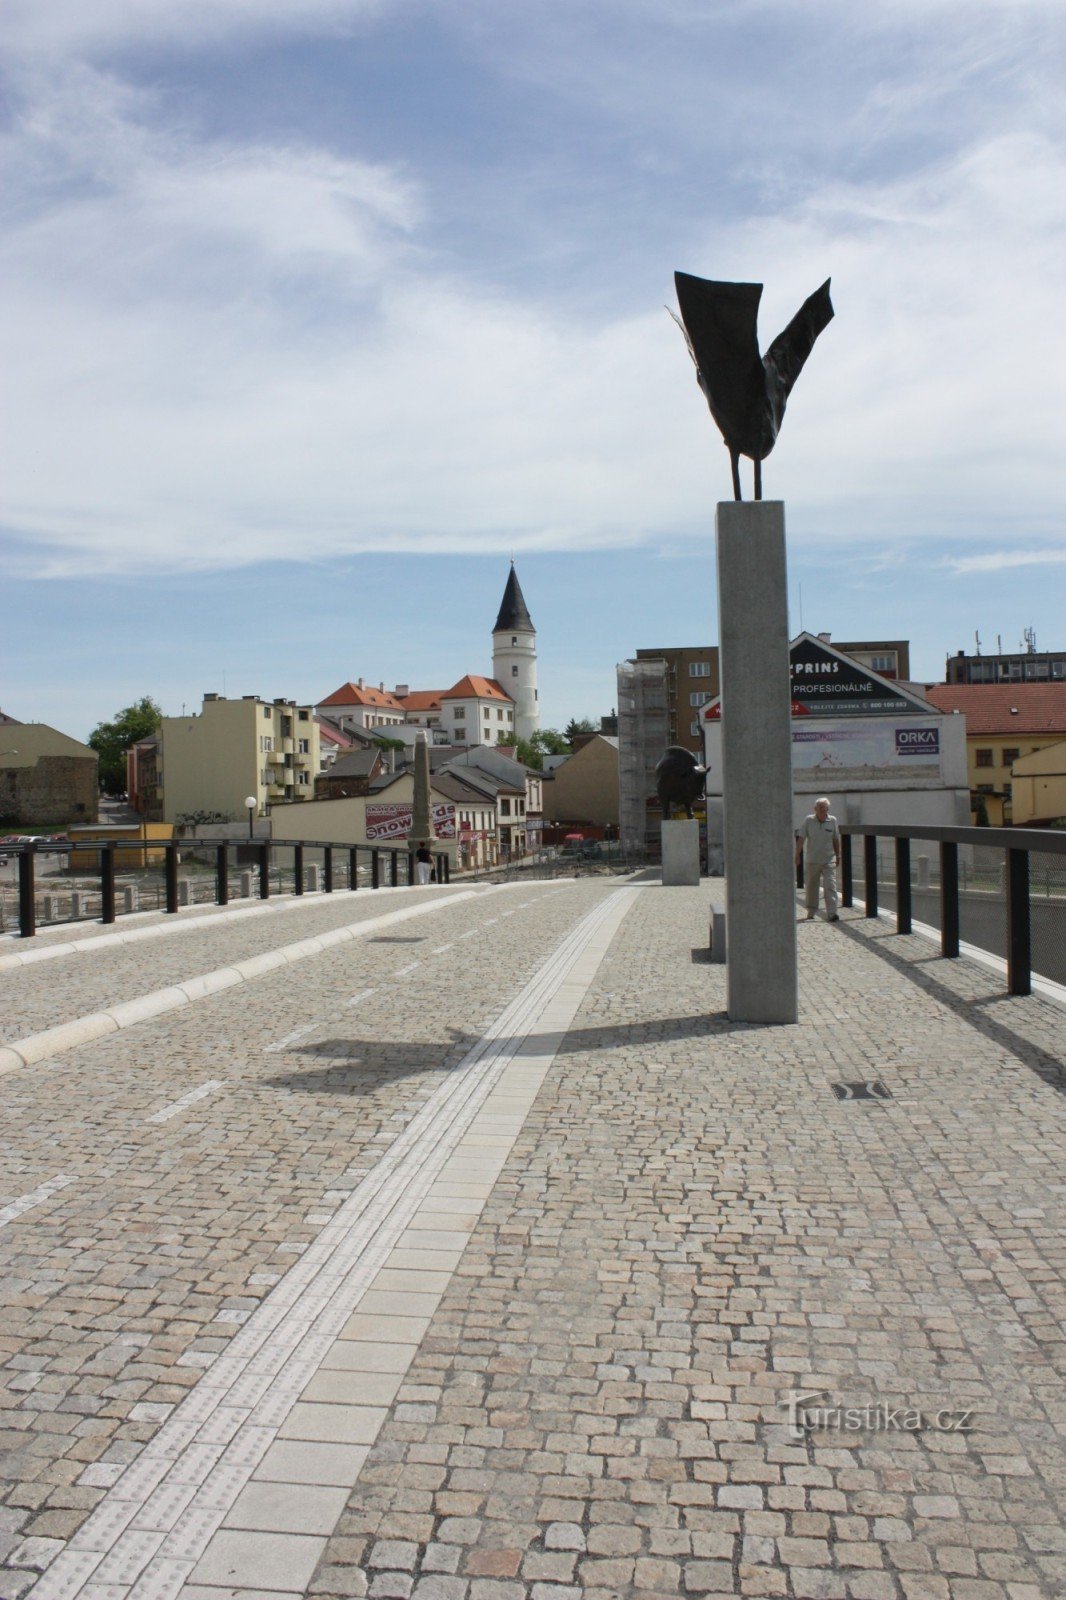 Cầu Tyrš mới xây ở Přerov